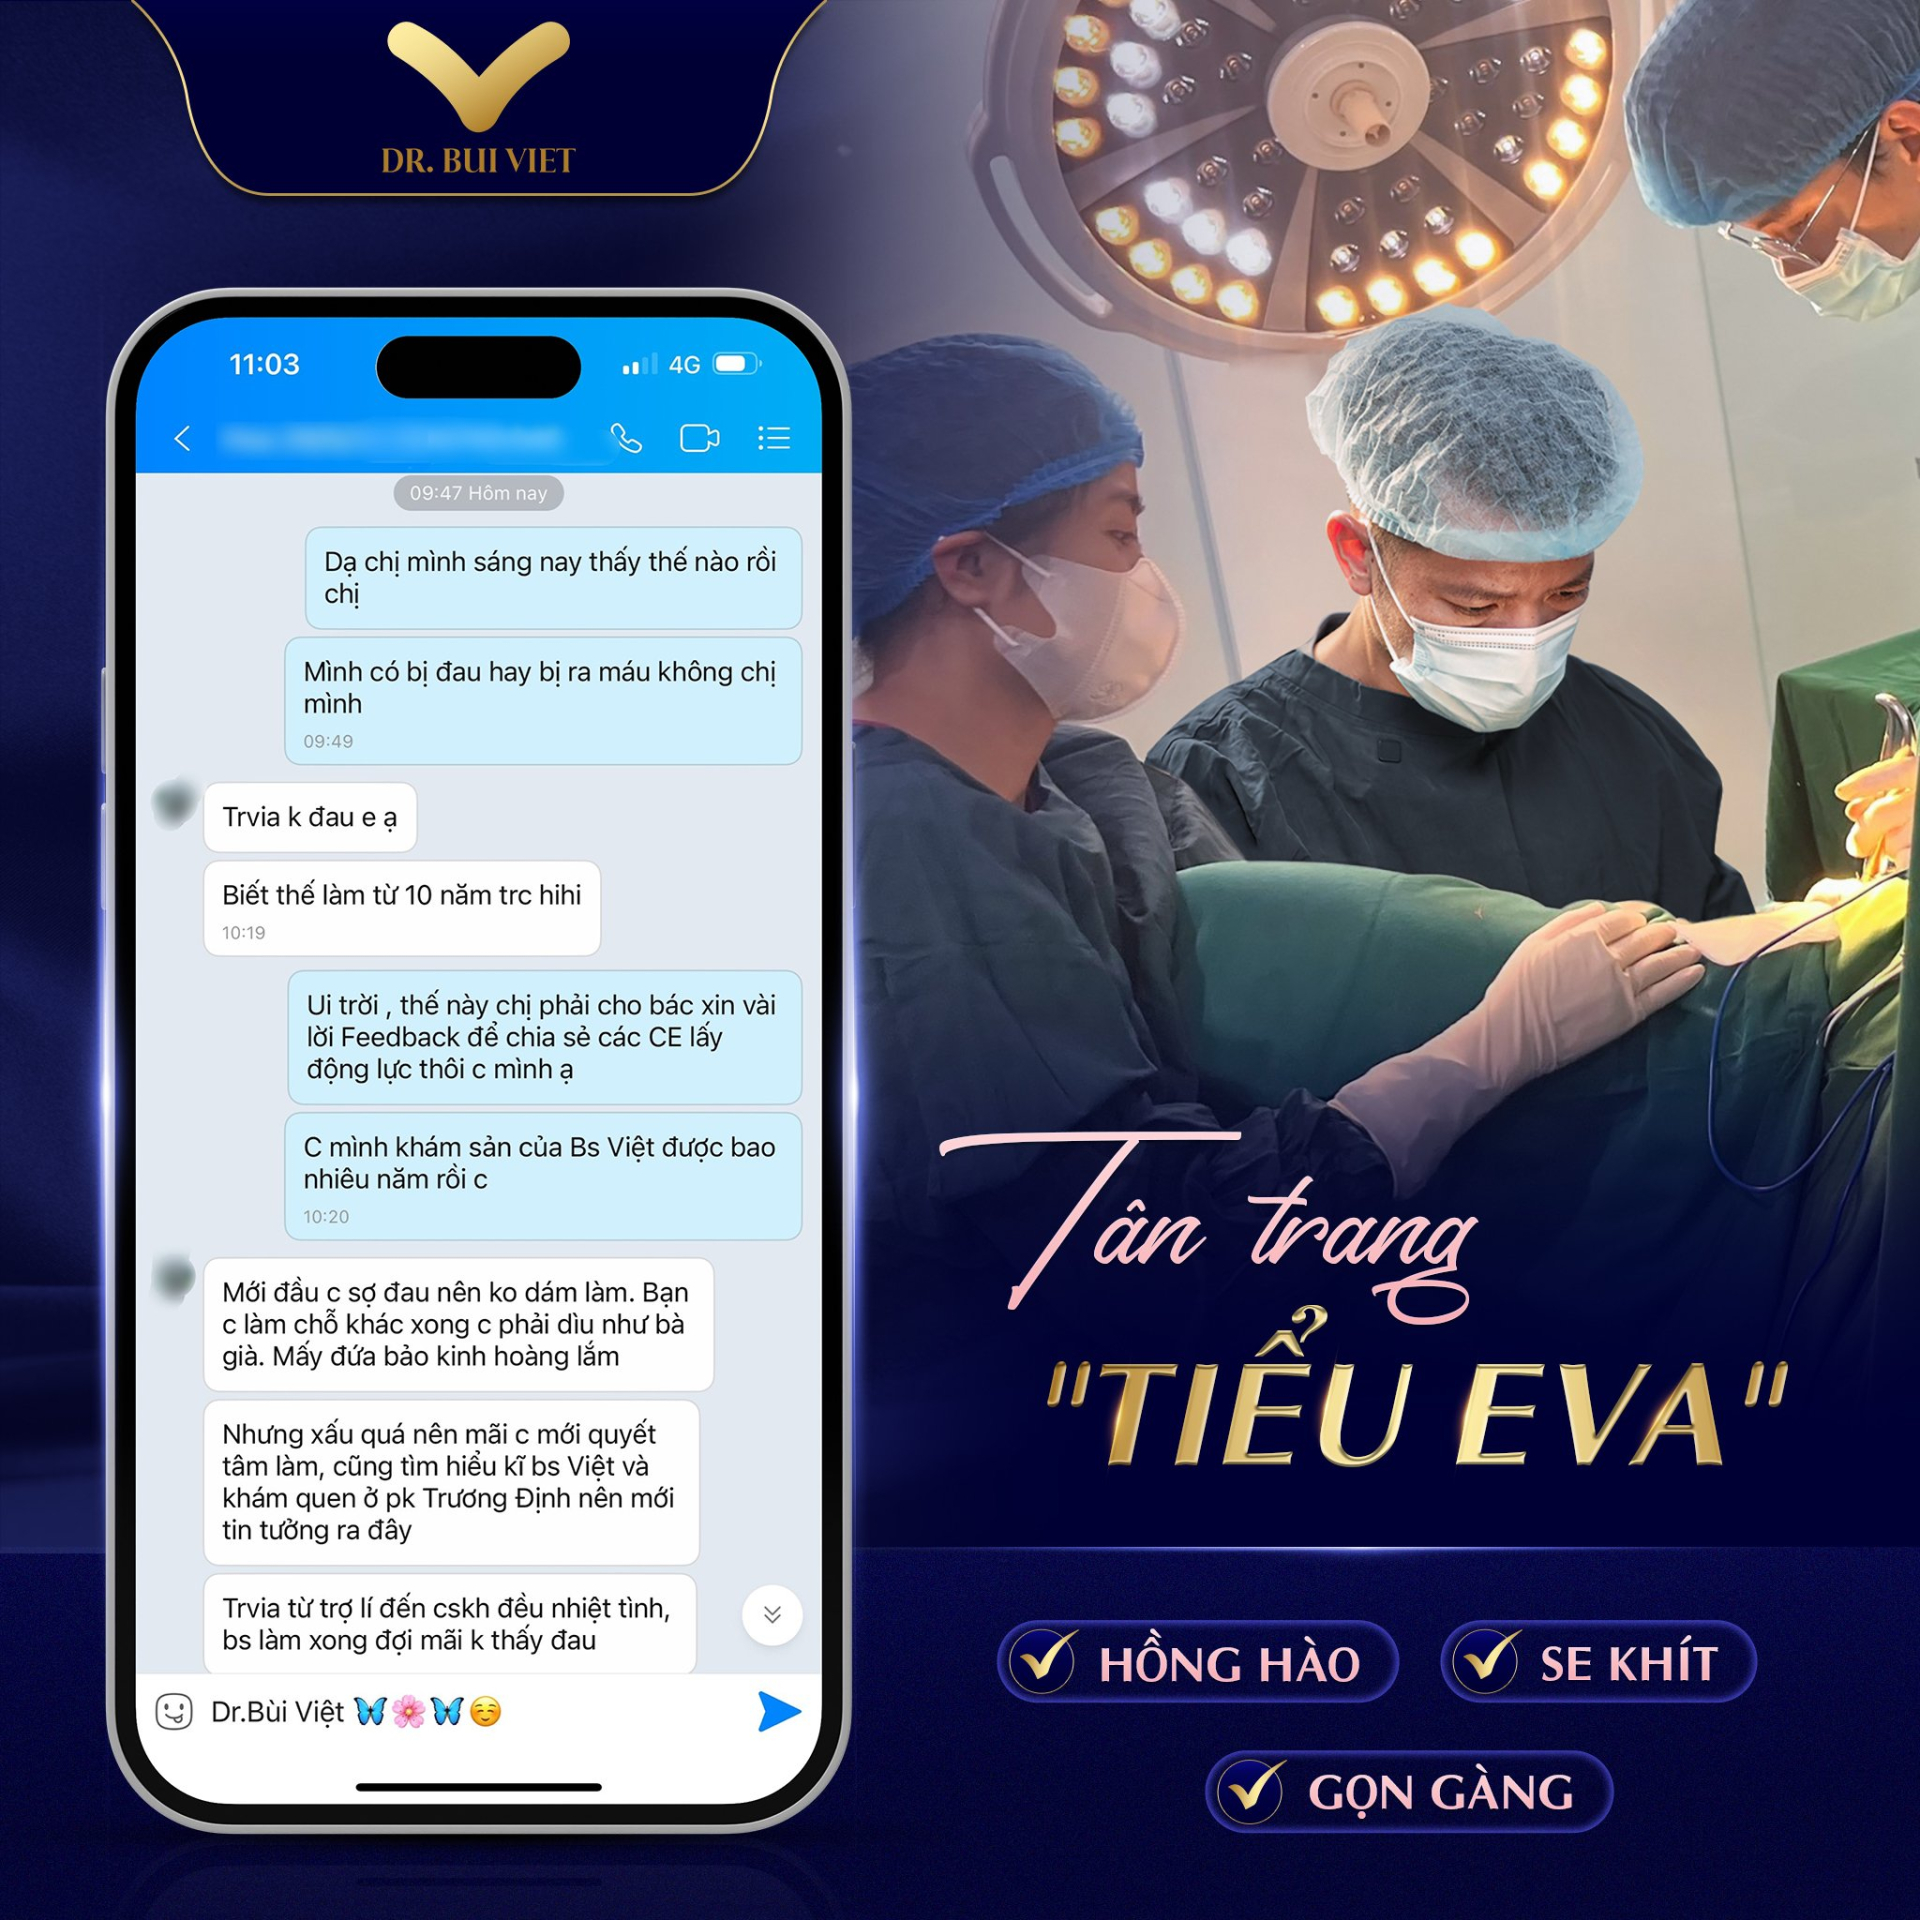 Hệ thống thẩm mỹ Dr.Bùi Việt – Nơi kiến tạo vẻ đẹp hoàn hảo cho nữ giới uy tín tại Hà Nội và Sài Gòn - ảnh 3